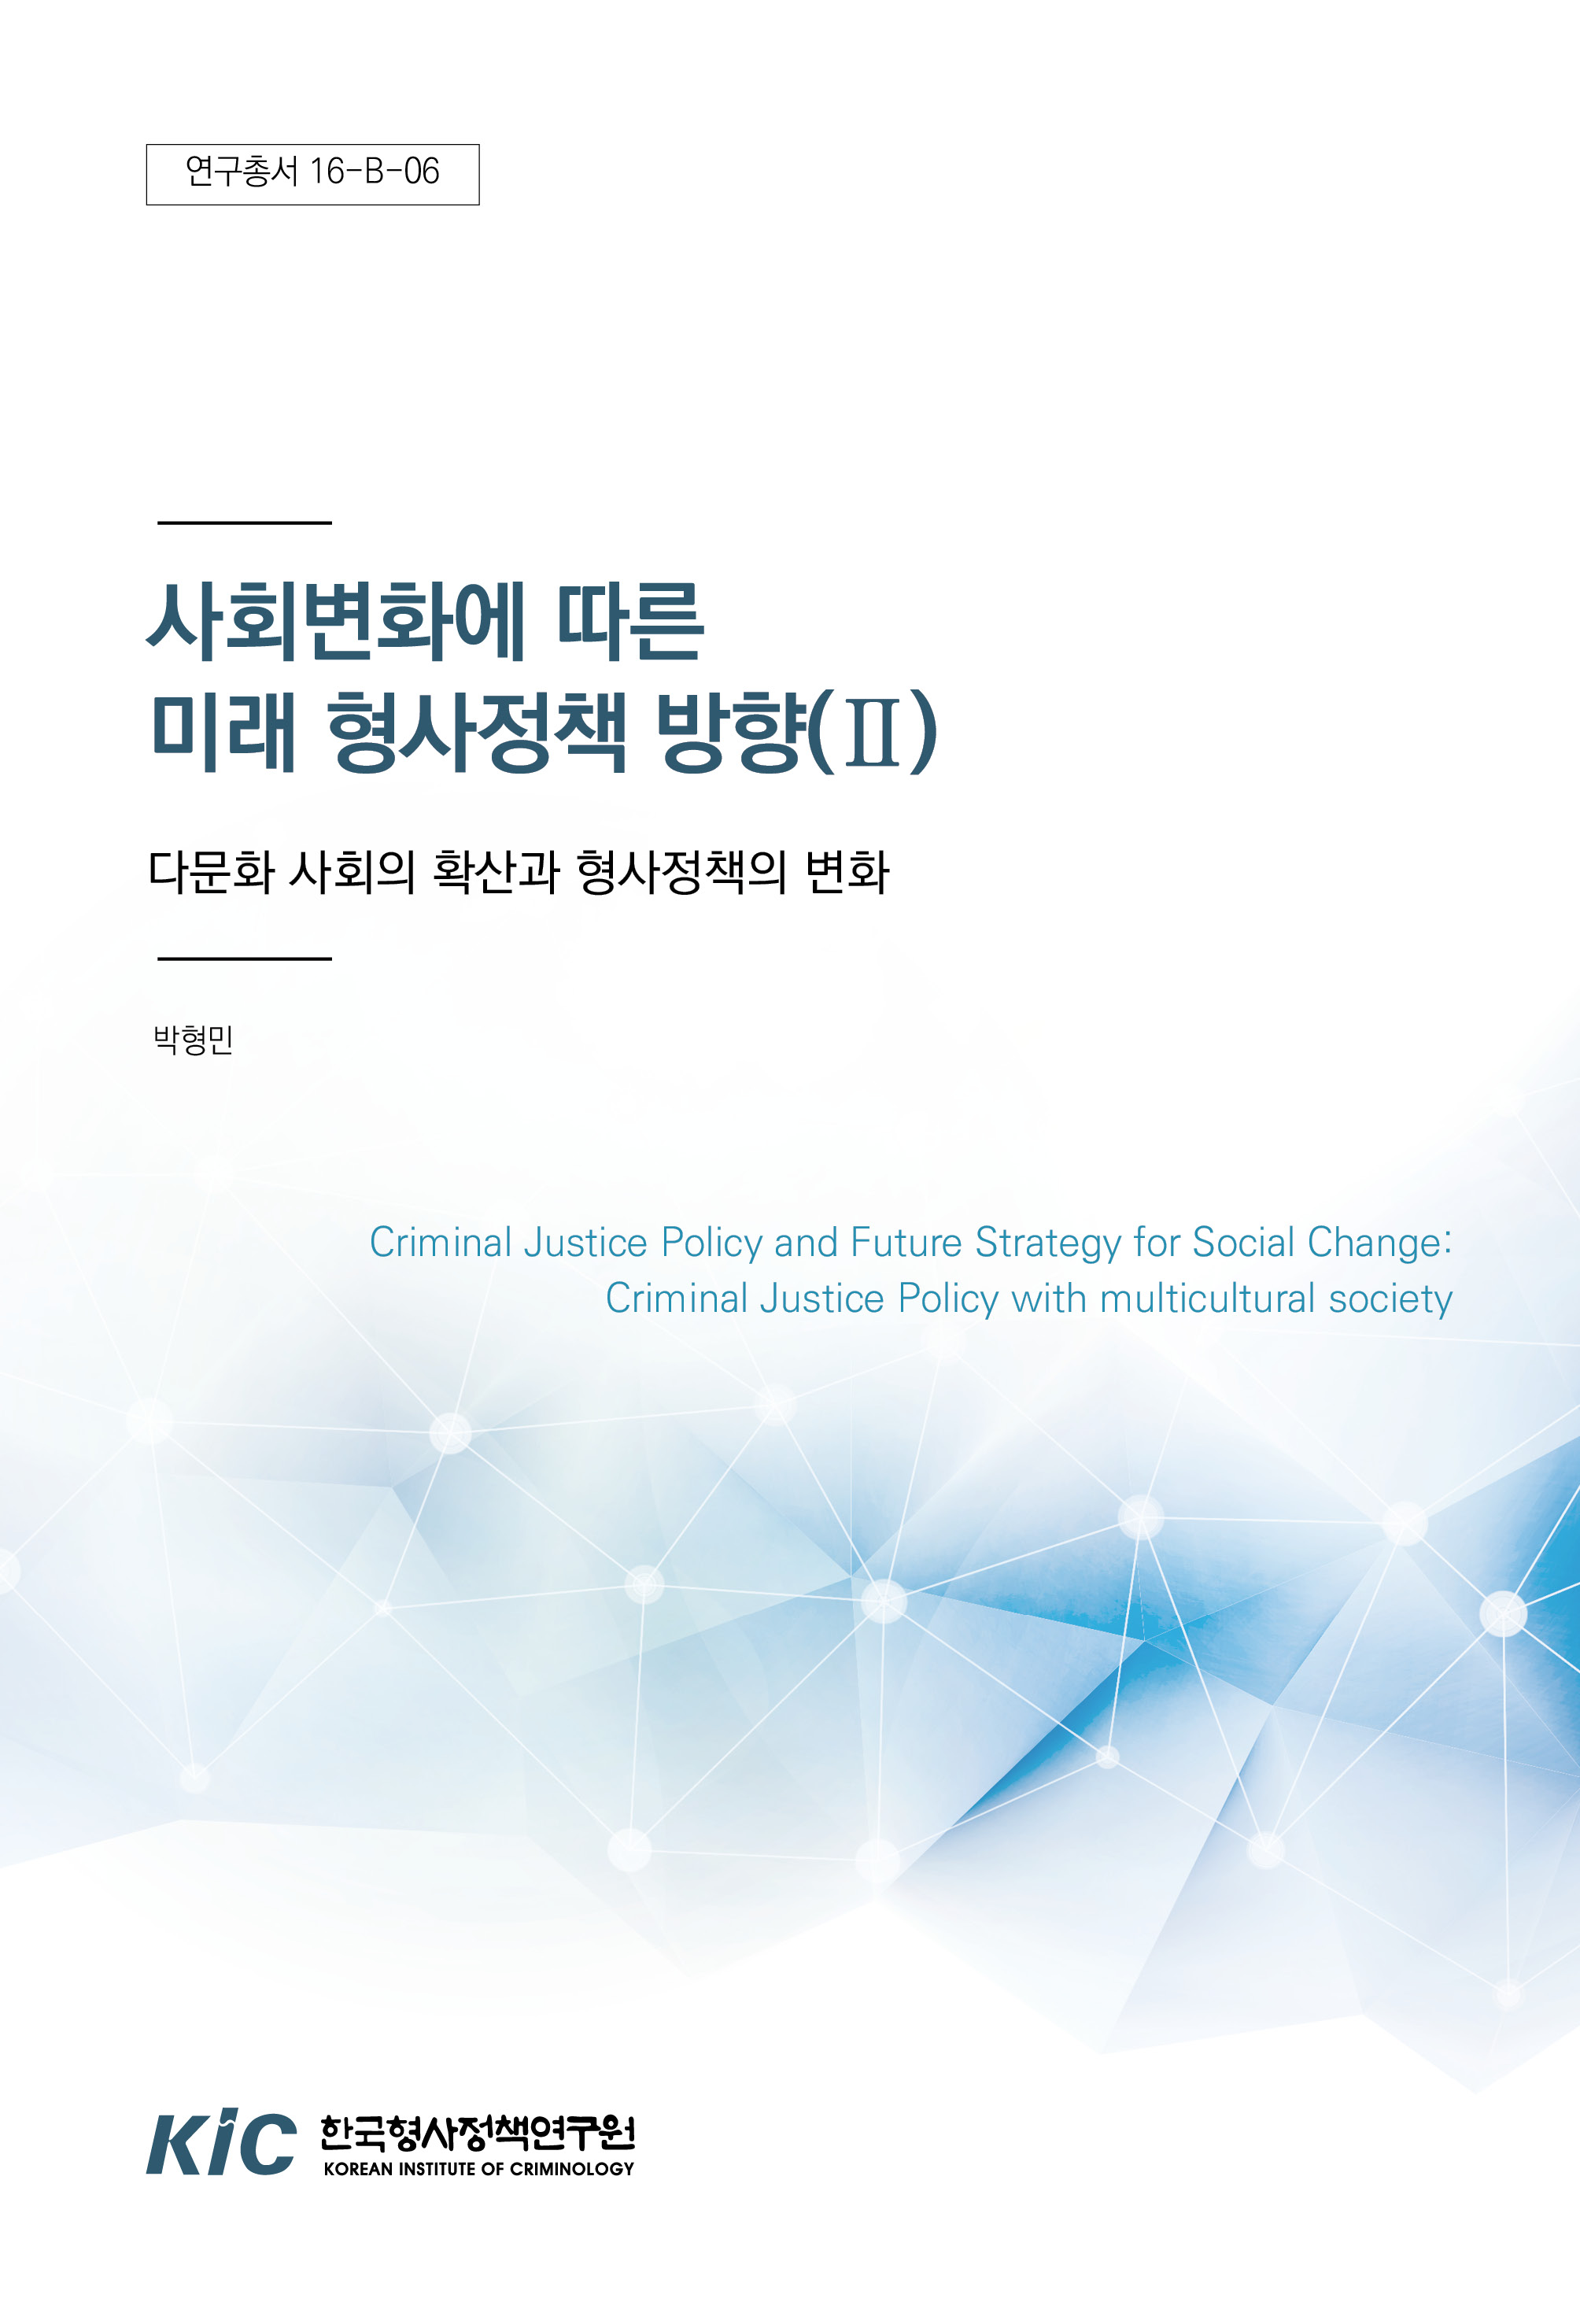 사회변화에 따른 미래 형사정책 방향(Ⅱ) : 다문화 사회의 확산과 형사정책의 변화